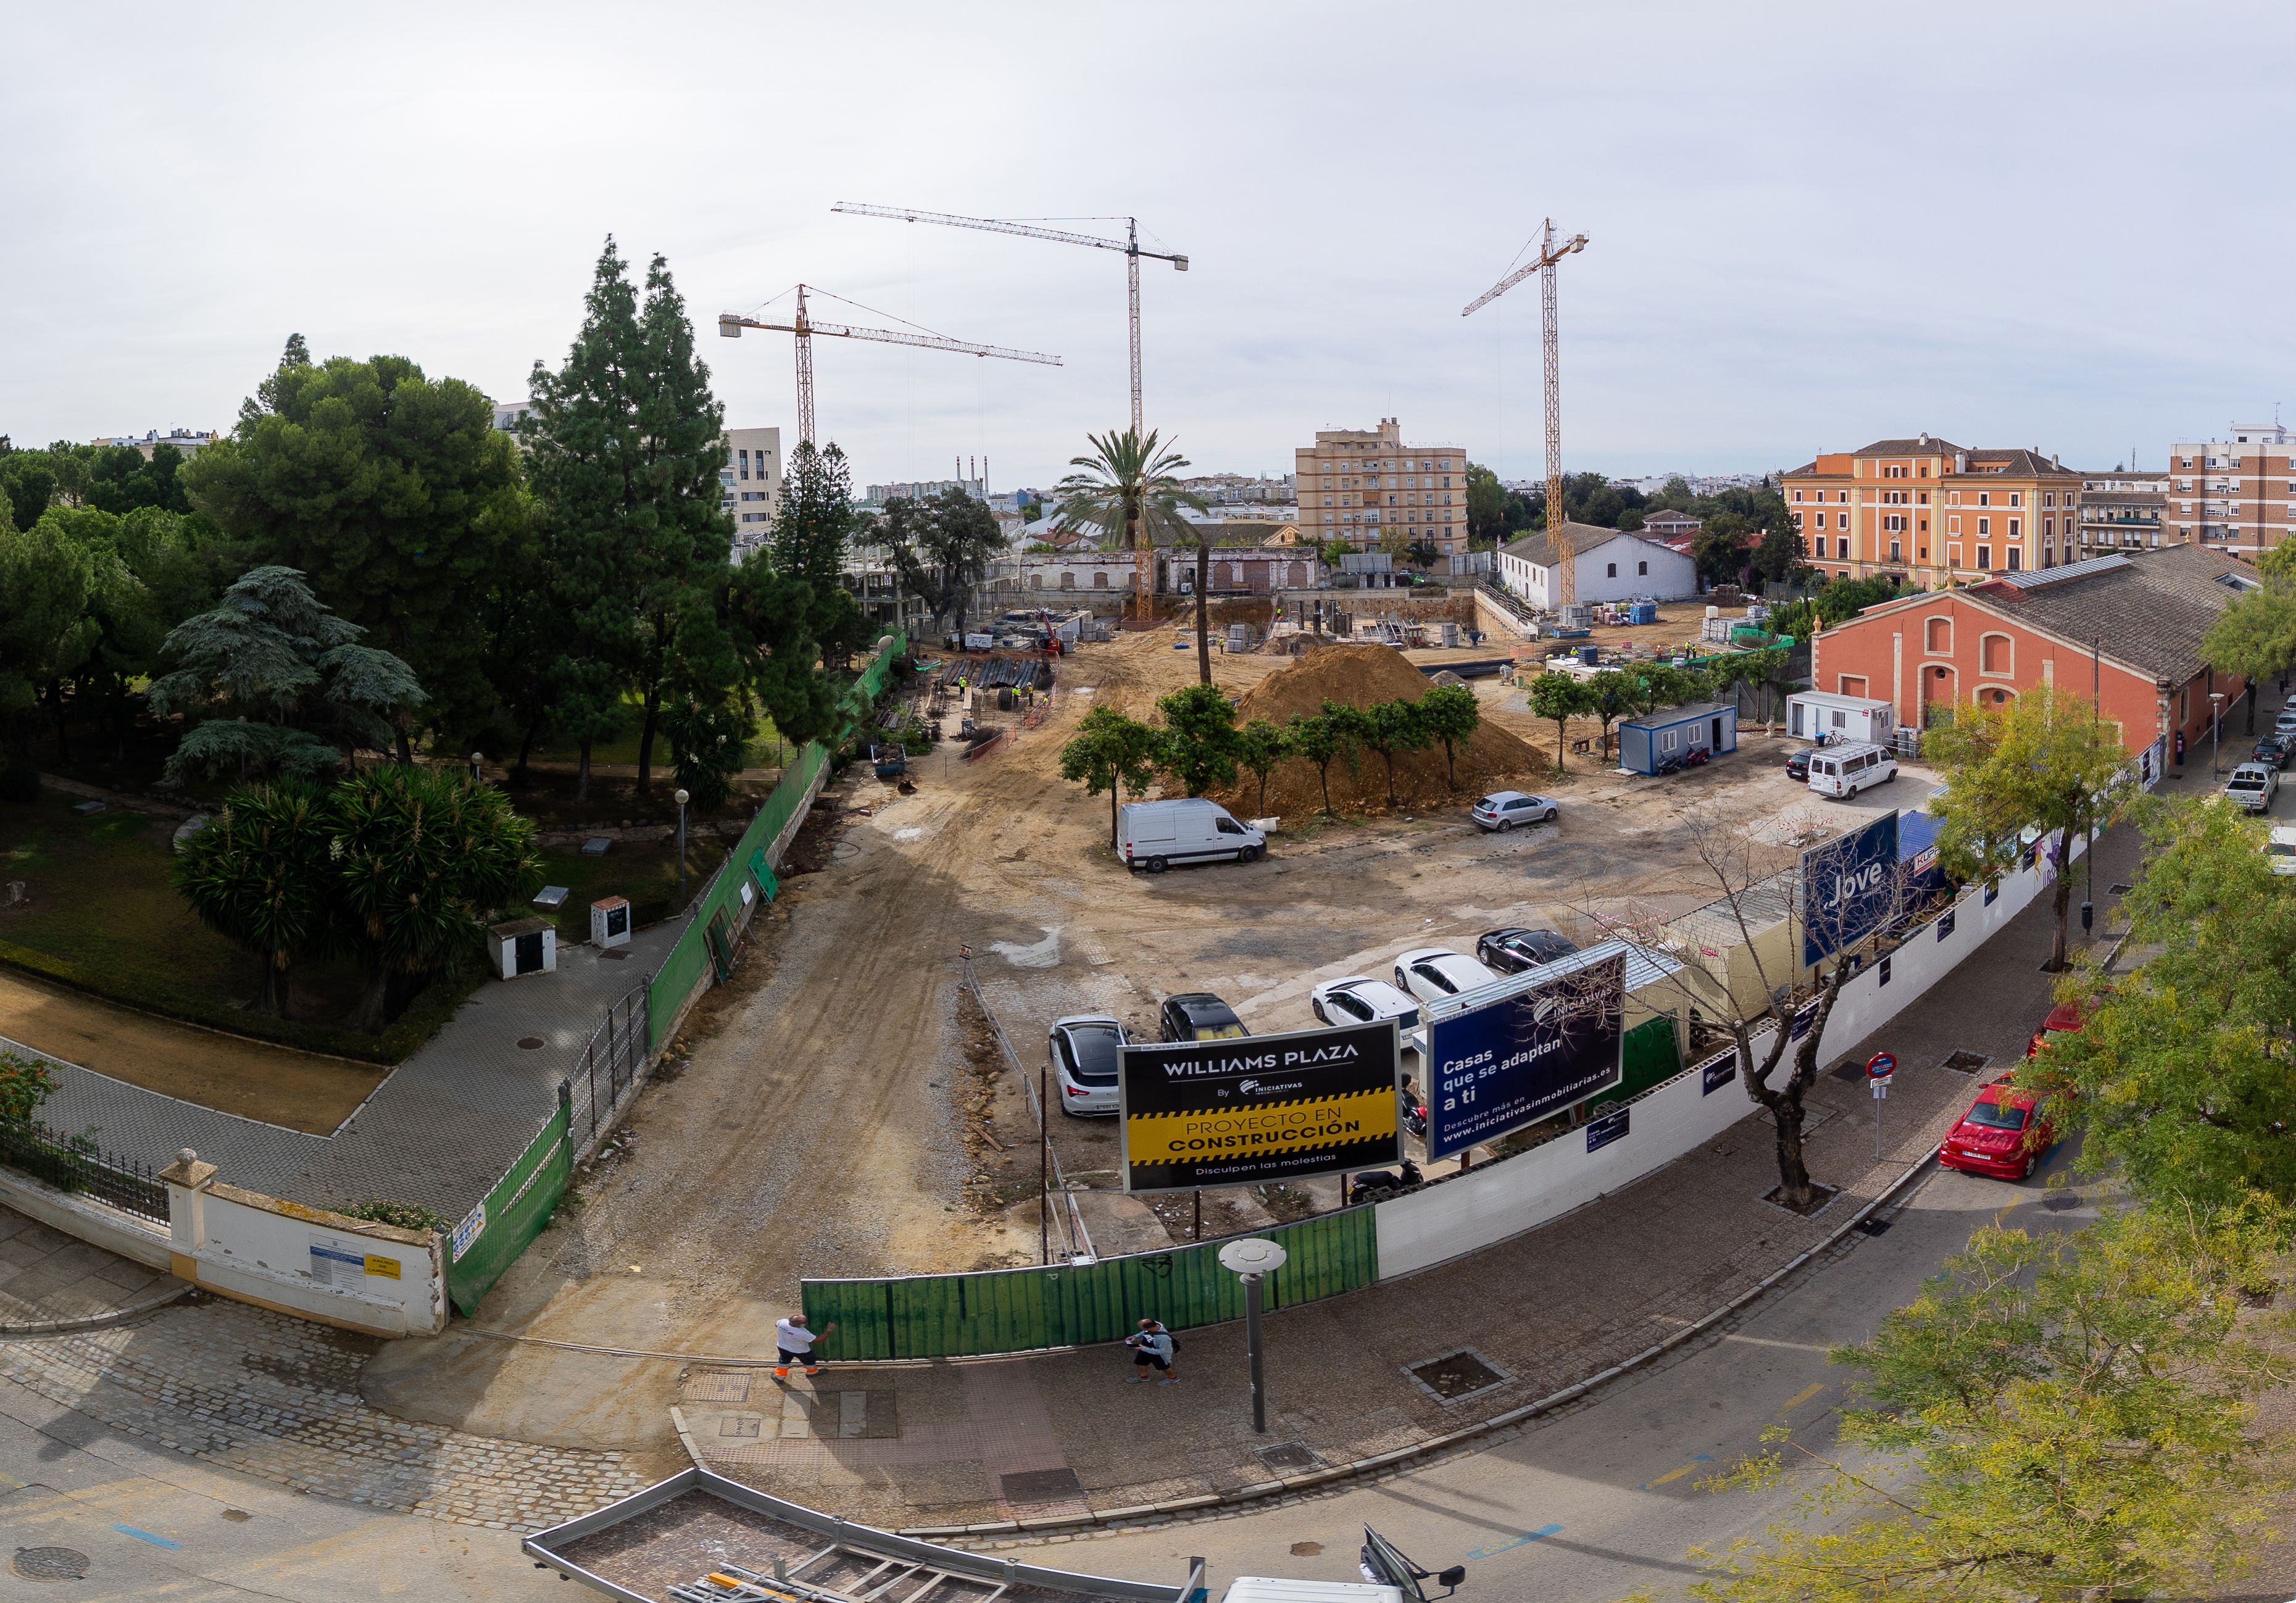 Vista general del proyecto de Iniciativas Inmobiliarias en el entorno de calles Circo y Santo Domingo: Residencial Williams Plaza ha puesto de moda vivir en el centro de Jerez.